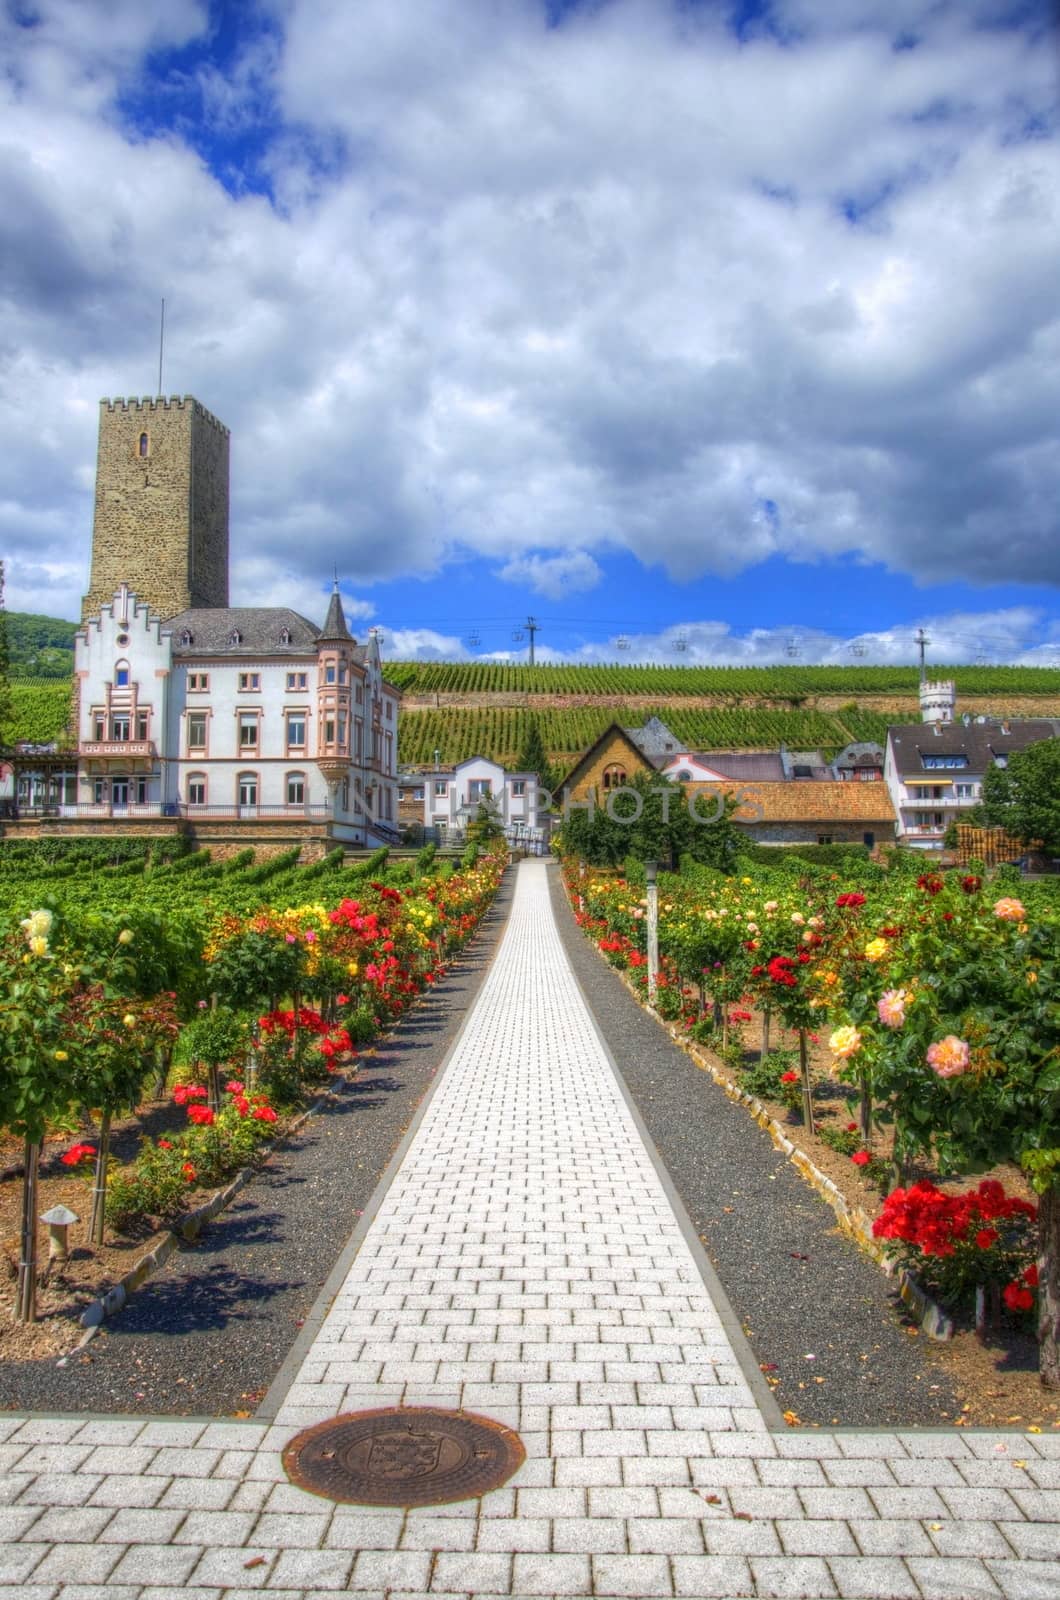 Footpath with flowers in Ruedesheim, Rhein-main-pfalz, Germany by Eagle2308